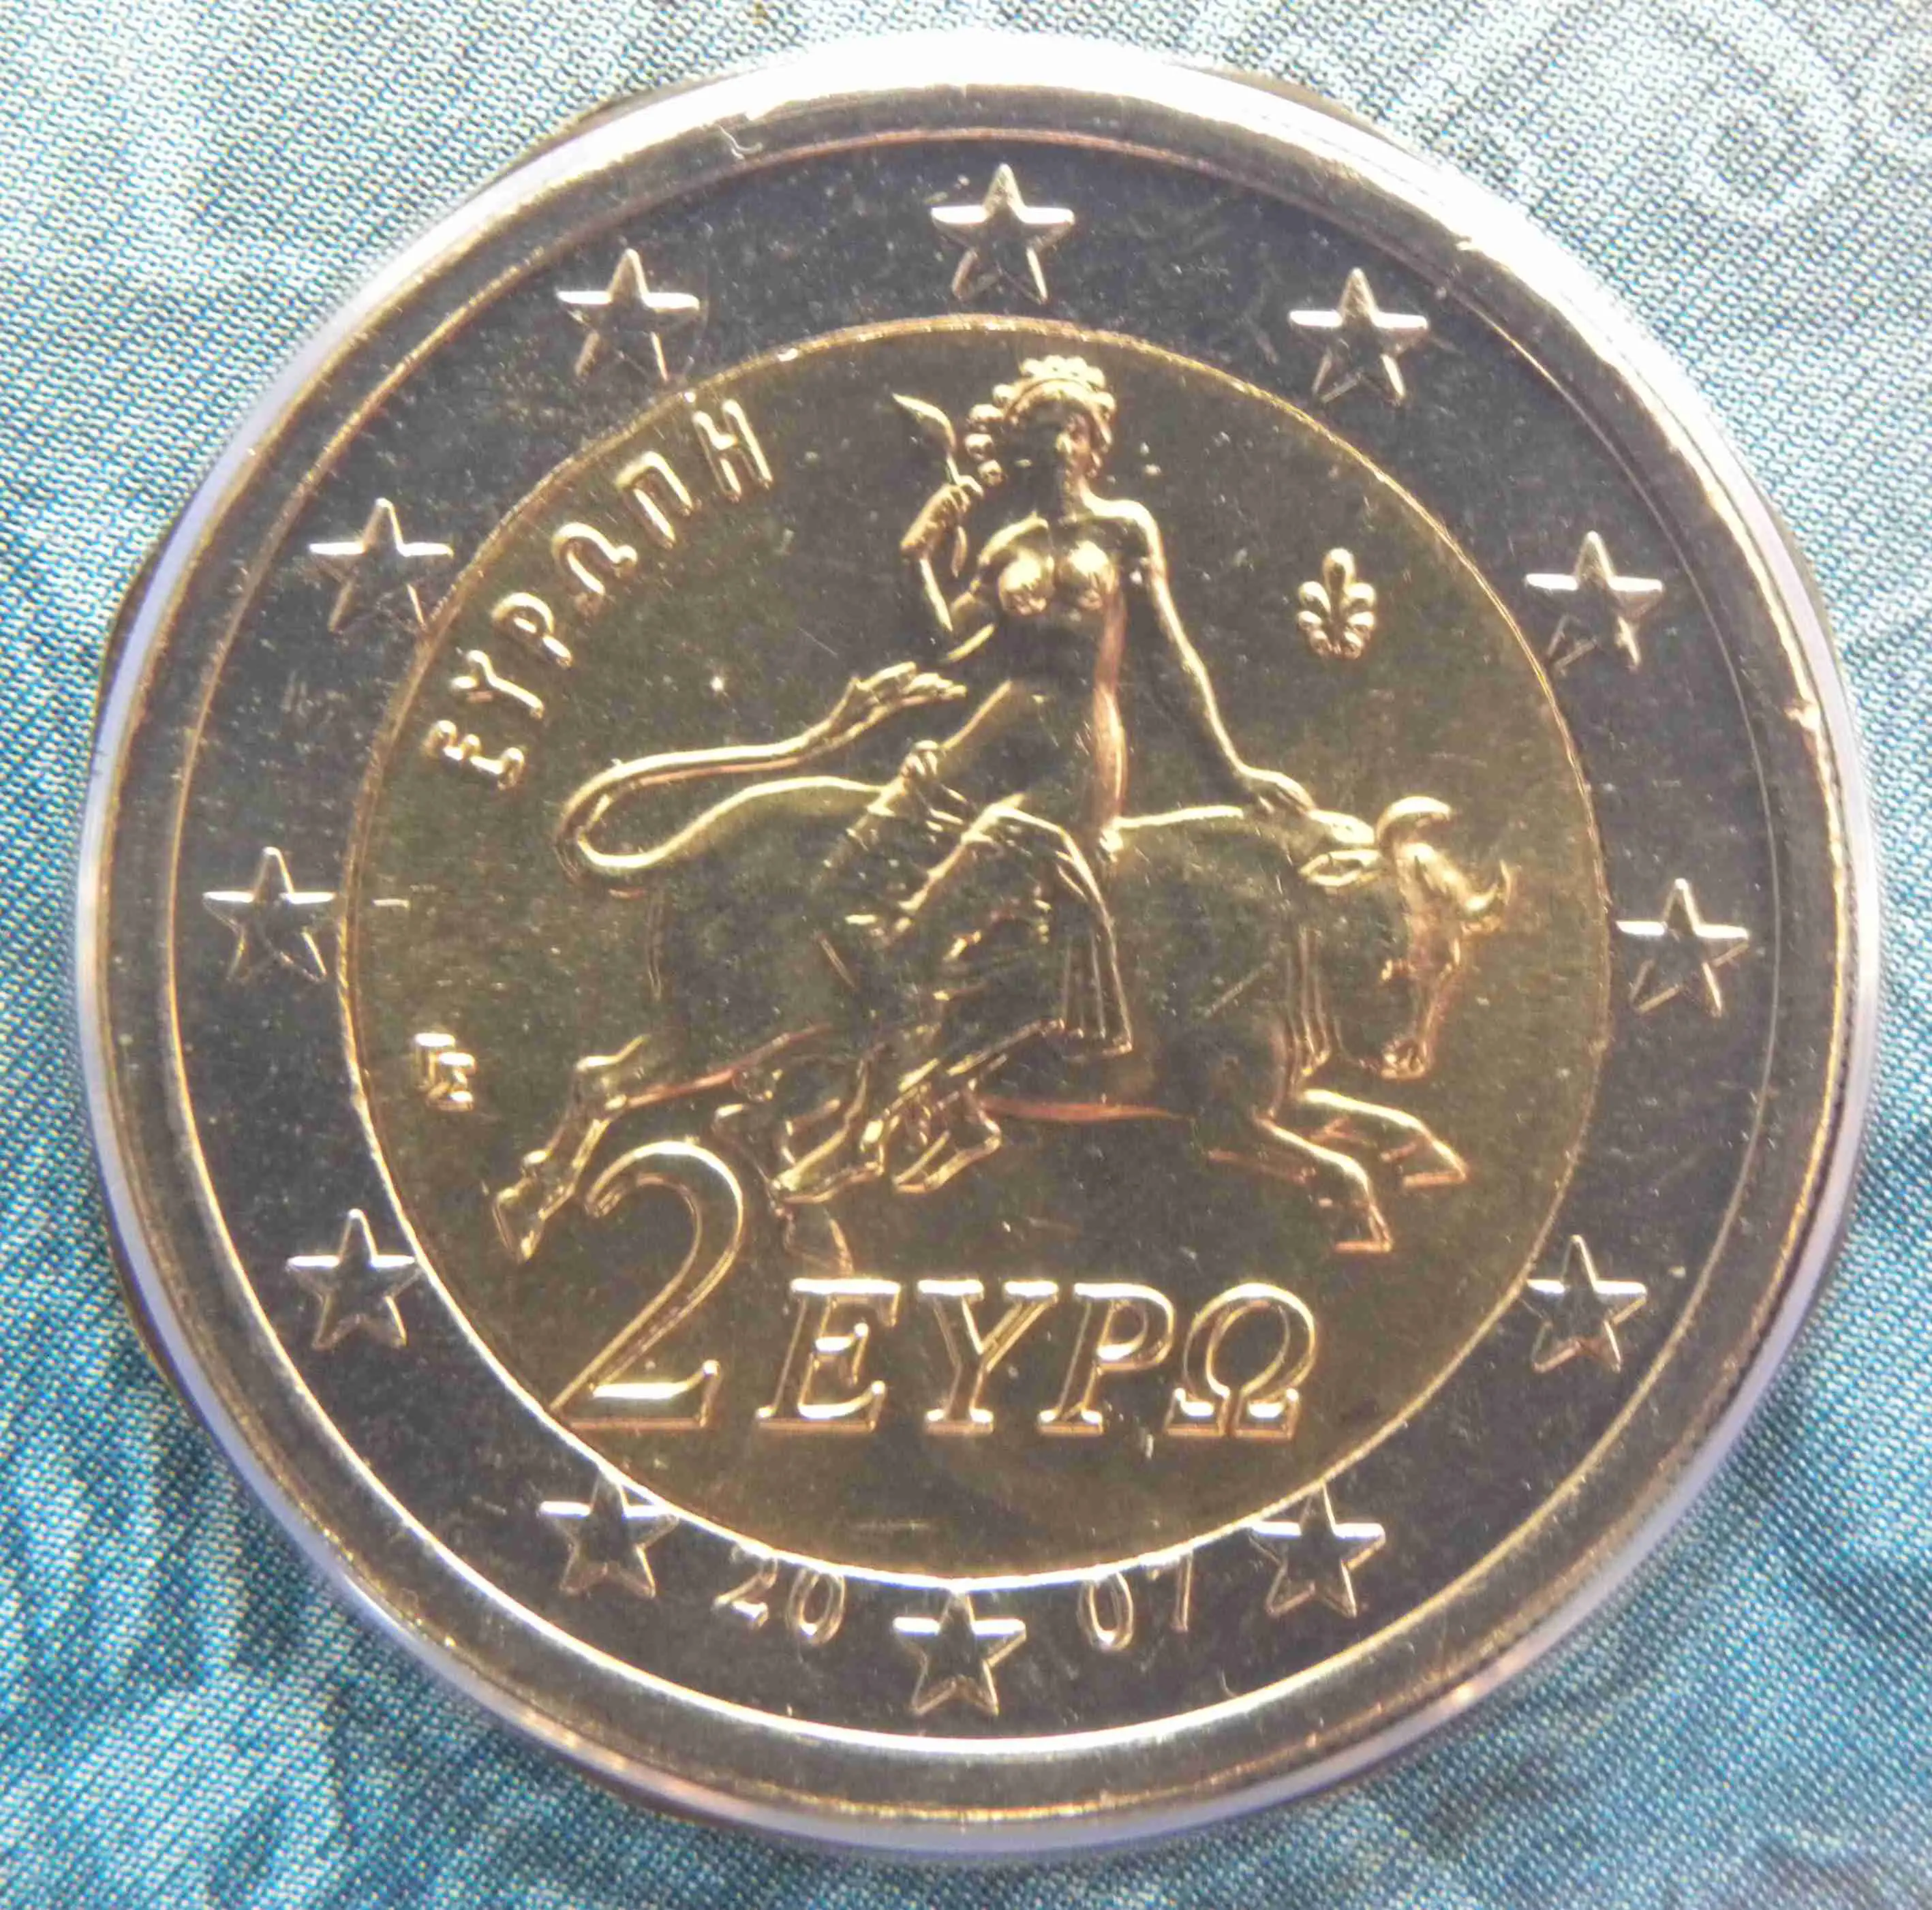 Griechenland 2 Euro Münze 2007 - euro-muenzen.tv - Der Online